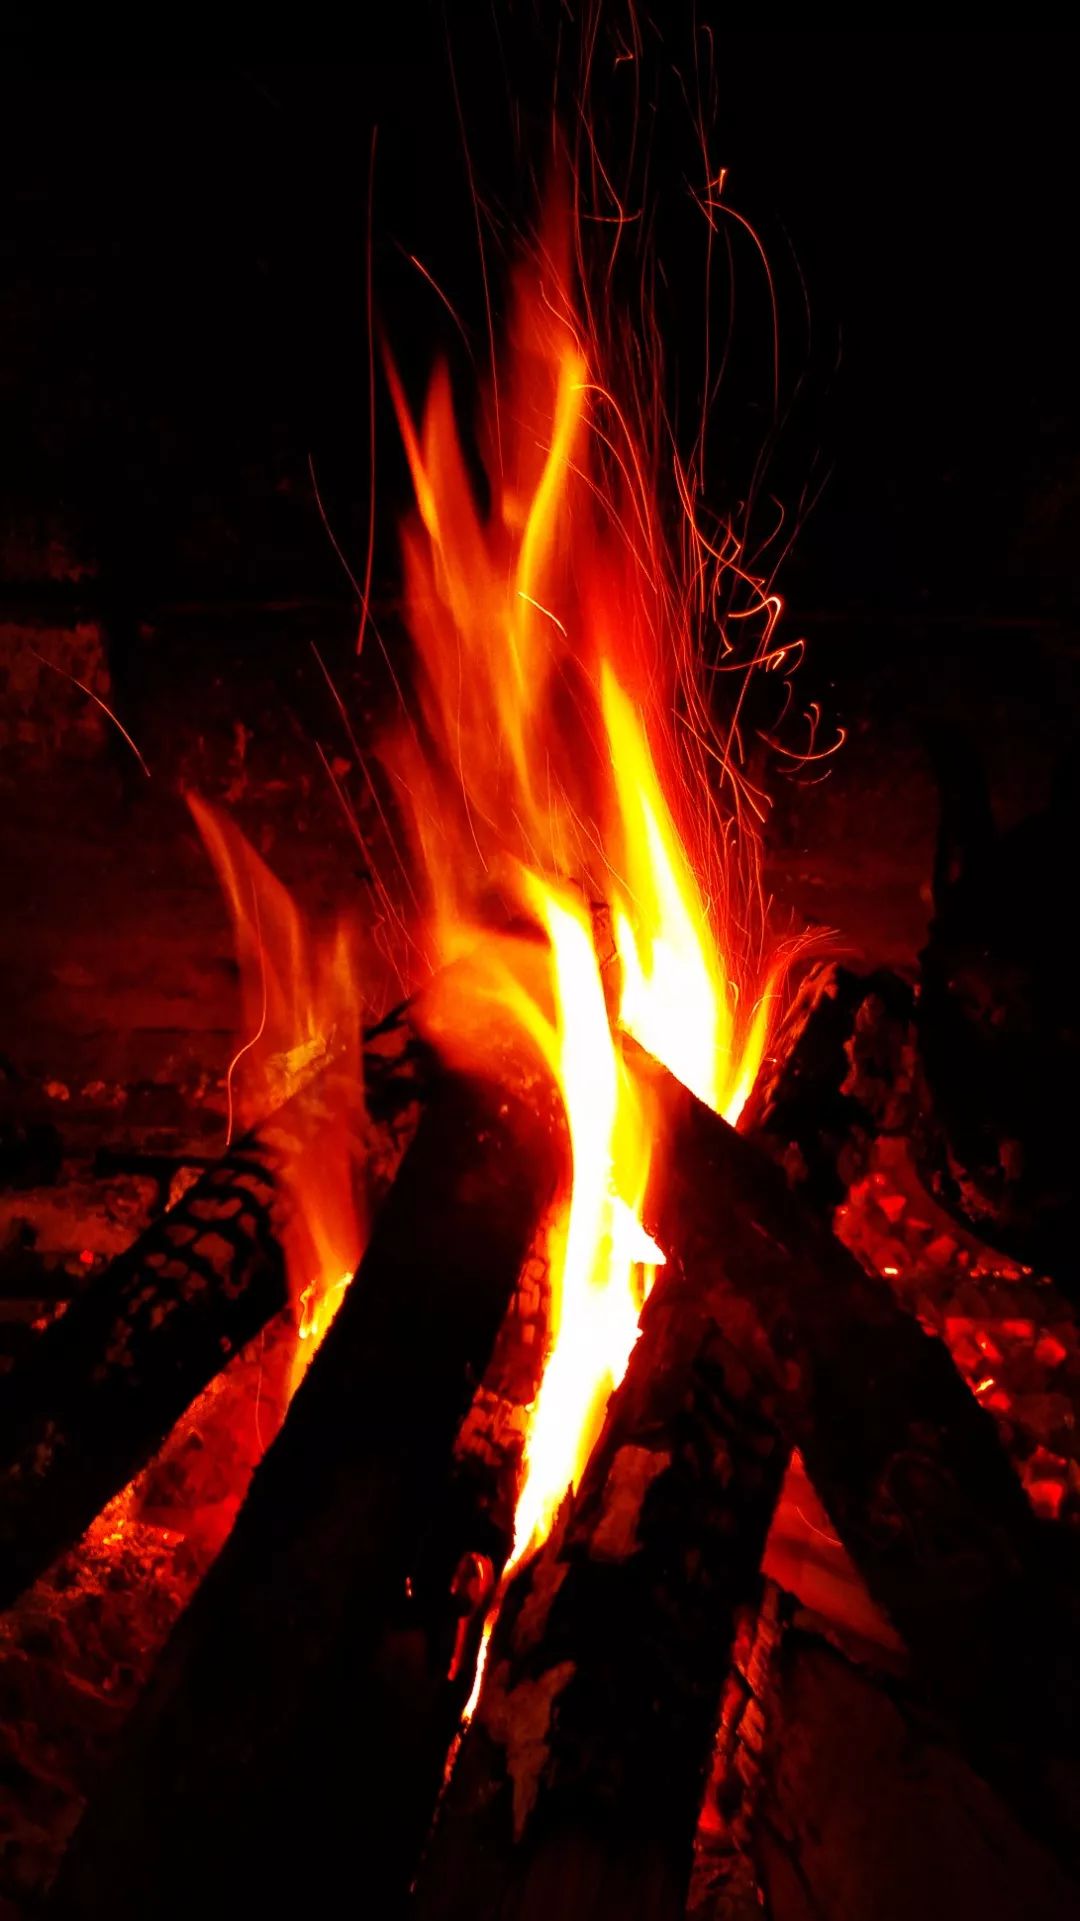 冬日里的火炉,给我们留下了美好的记忆